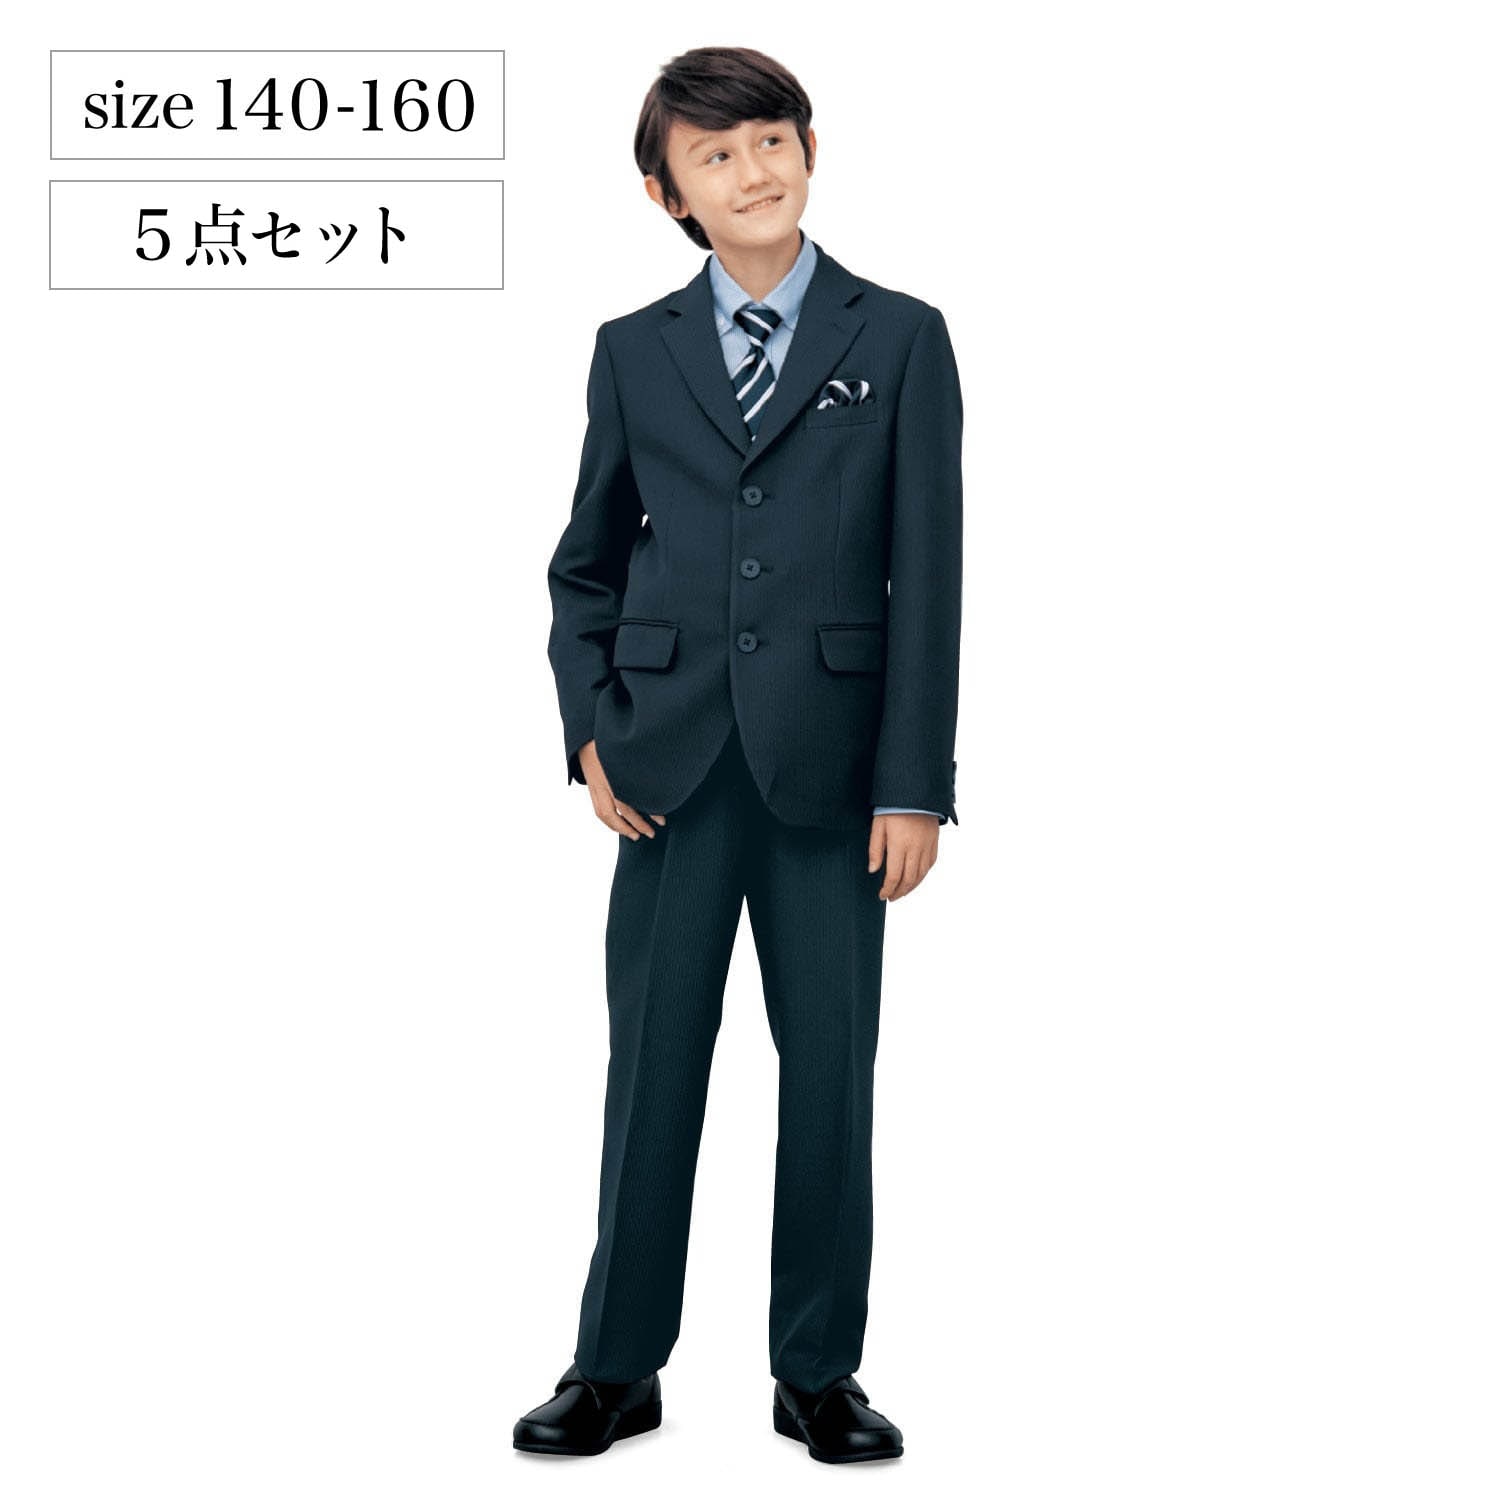 スーツ 150size